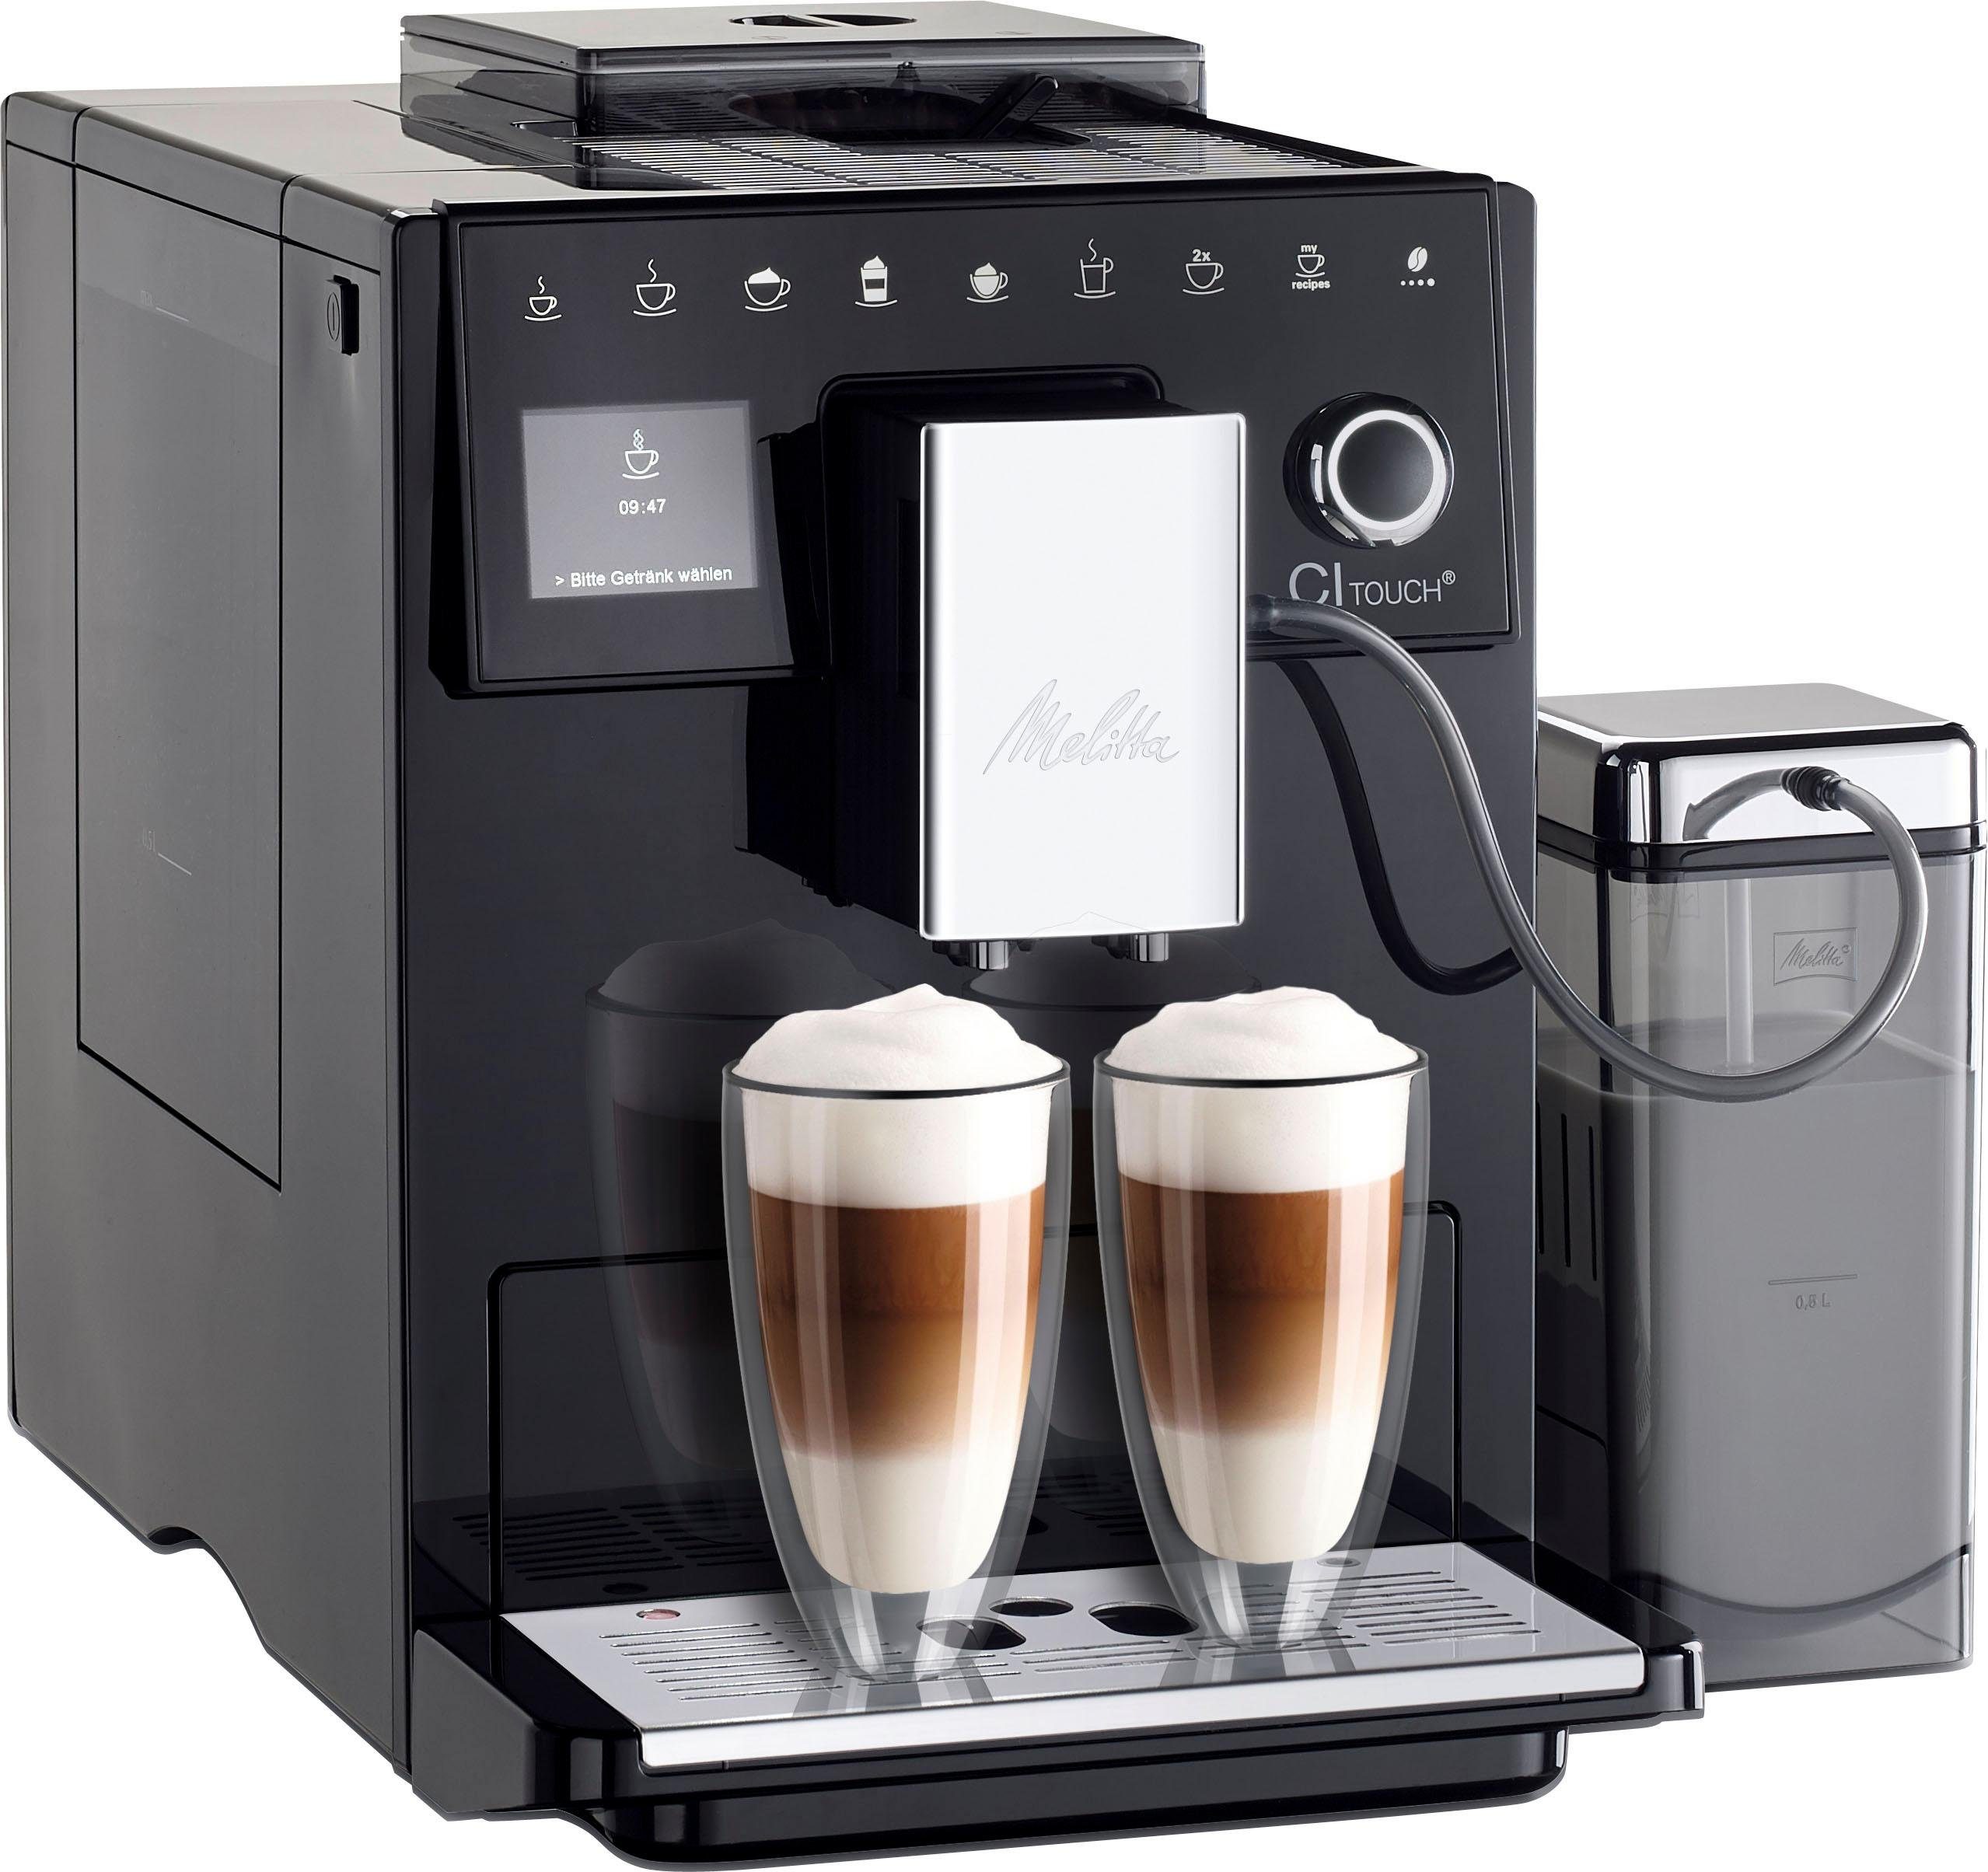 Melitta Kaffeevollautomat CI Touch® F630-102, Vielfältiger Kaffeegenuss  durch insgesamt 10 Kaffeevariationen online kaufen | OTTO